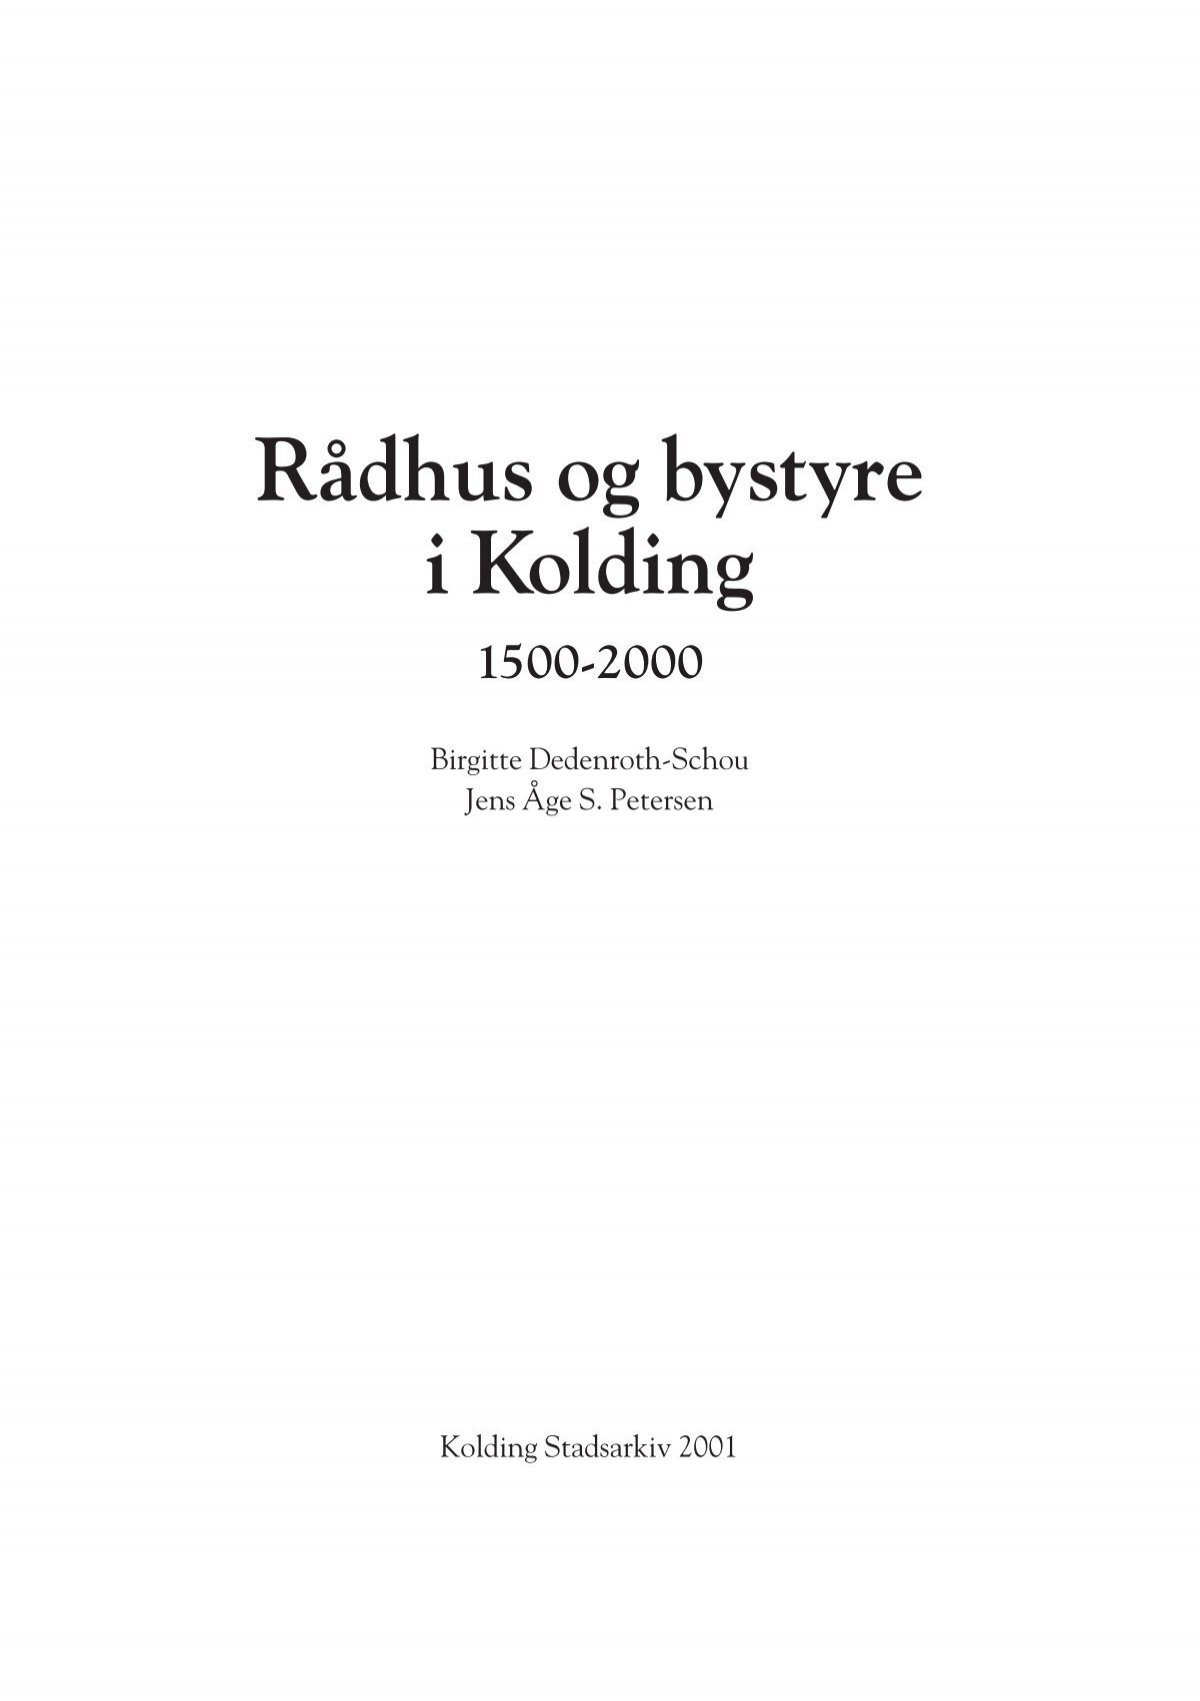 og bystyre i Kolding 1500-2000 - Dansk Center Byhistorie